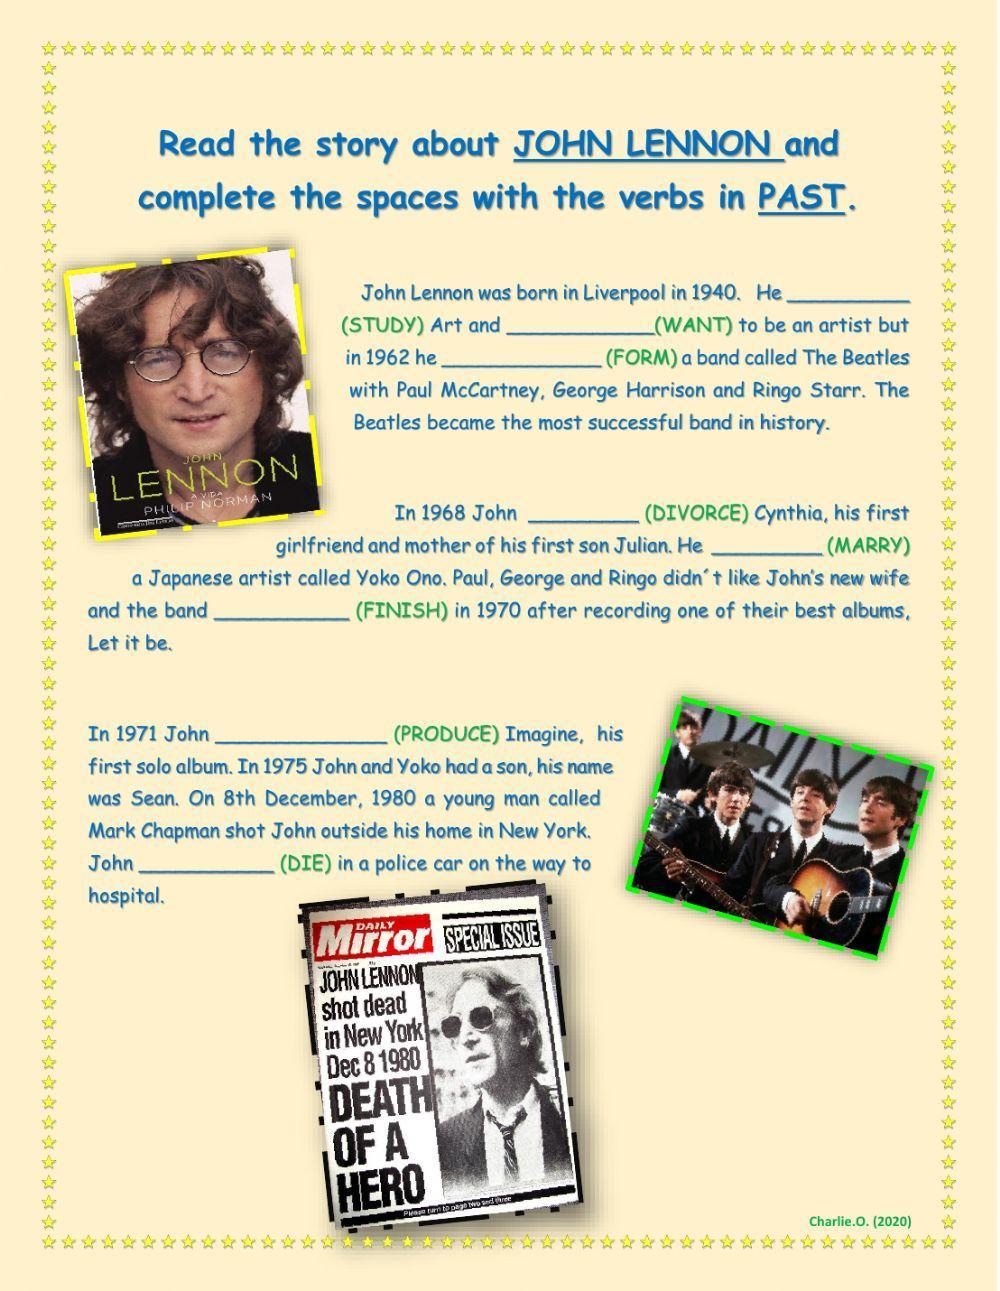 John Lennon story (simple past regular verbs)